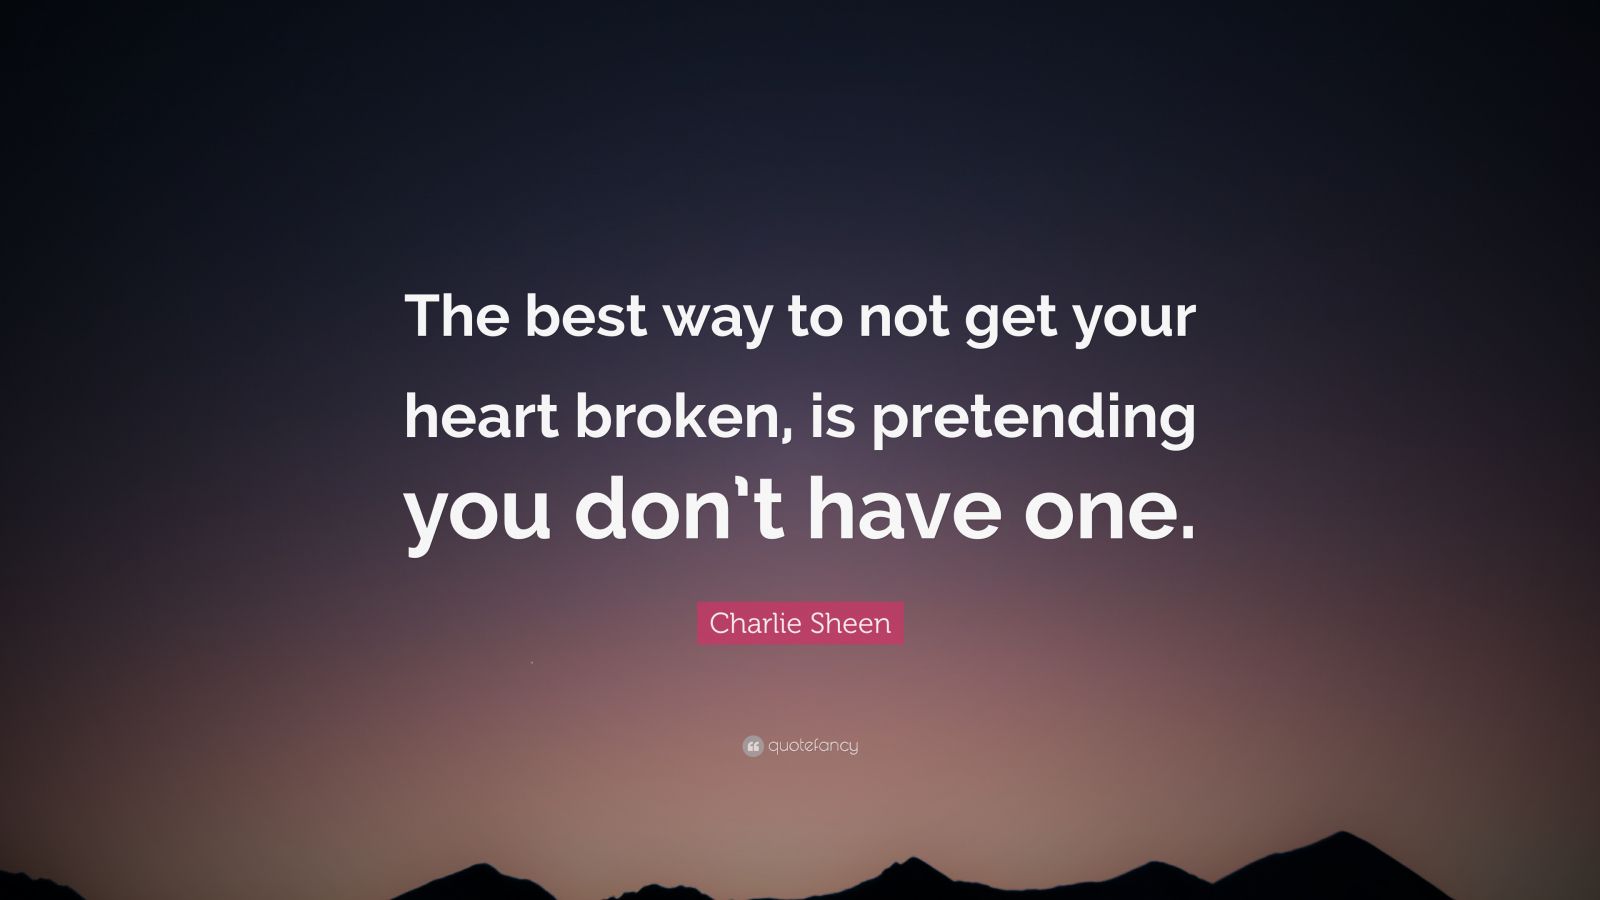 Charlie Sheen Quote: “The best way to not get your heart broken, is ...